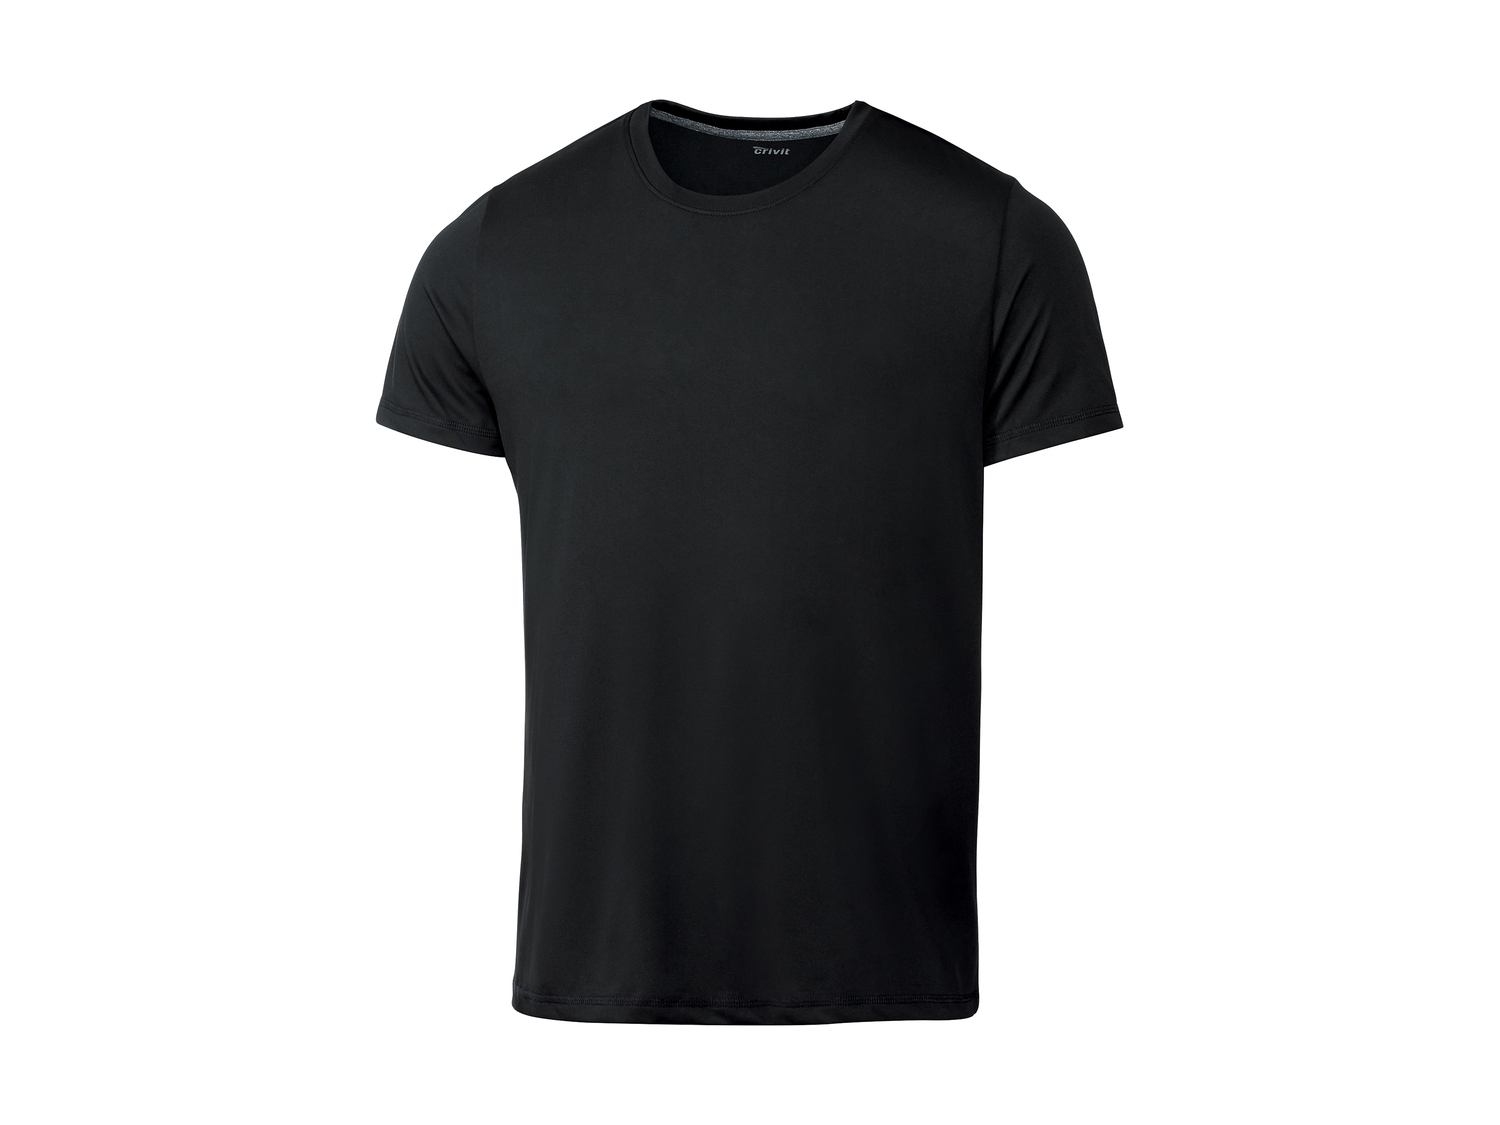 T-shirt homme , le prix 3.99 € 
- Ex. 100 % polyester.
- Du S au XL selon modèle
- ...